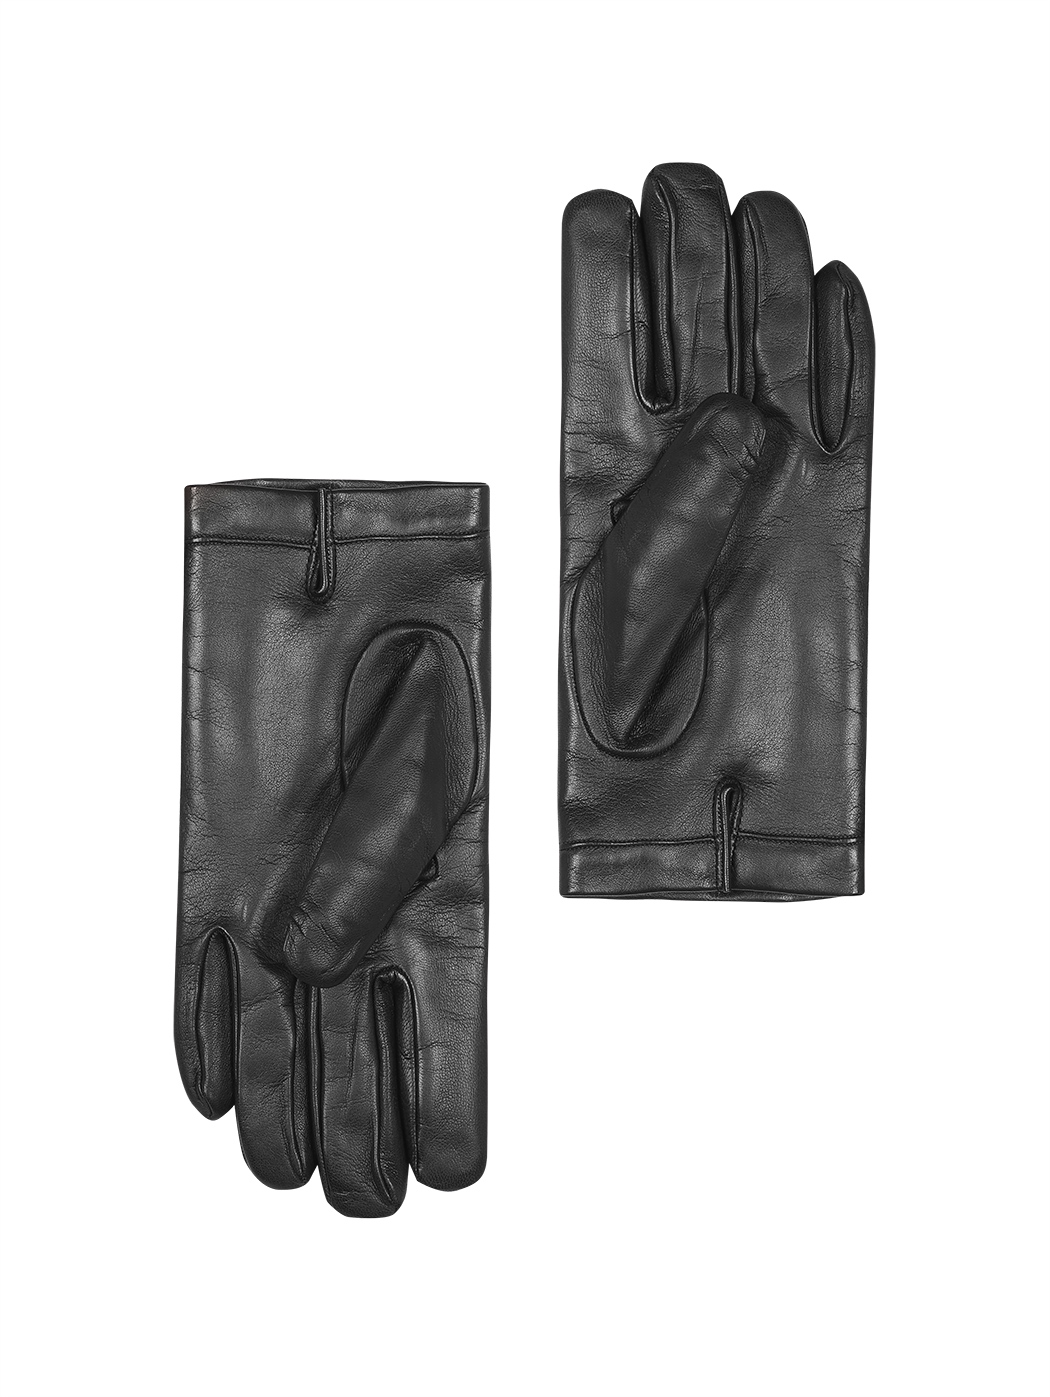 Классические мужские перчатки (кашемир) темно коричневый